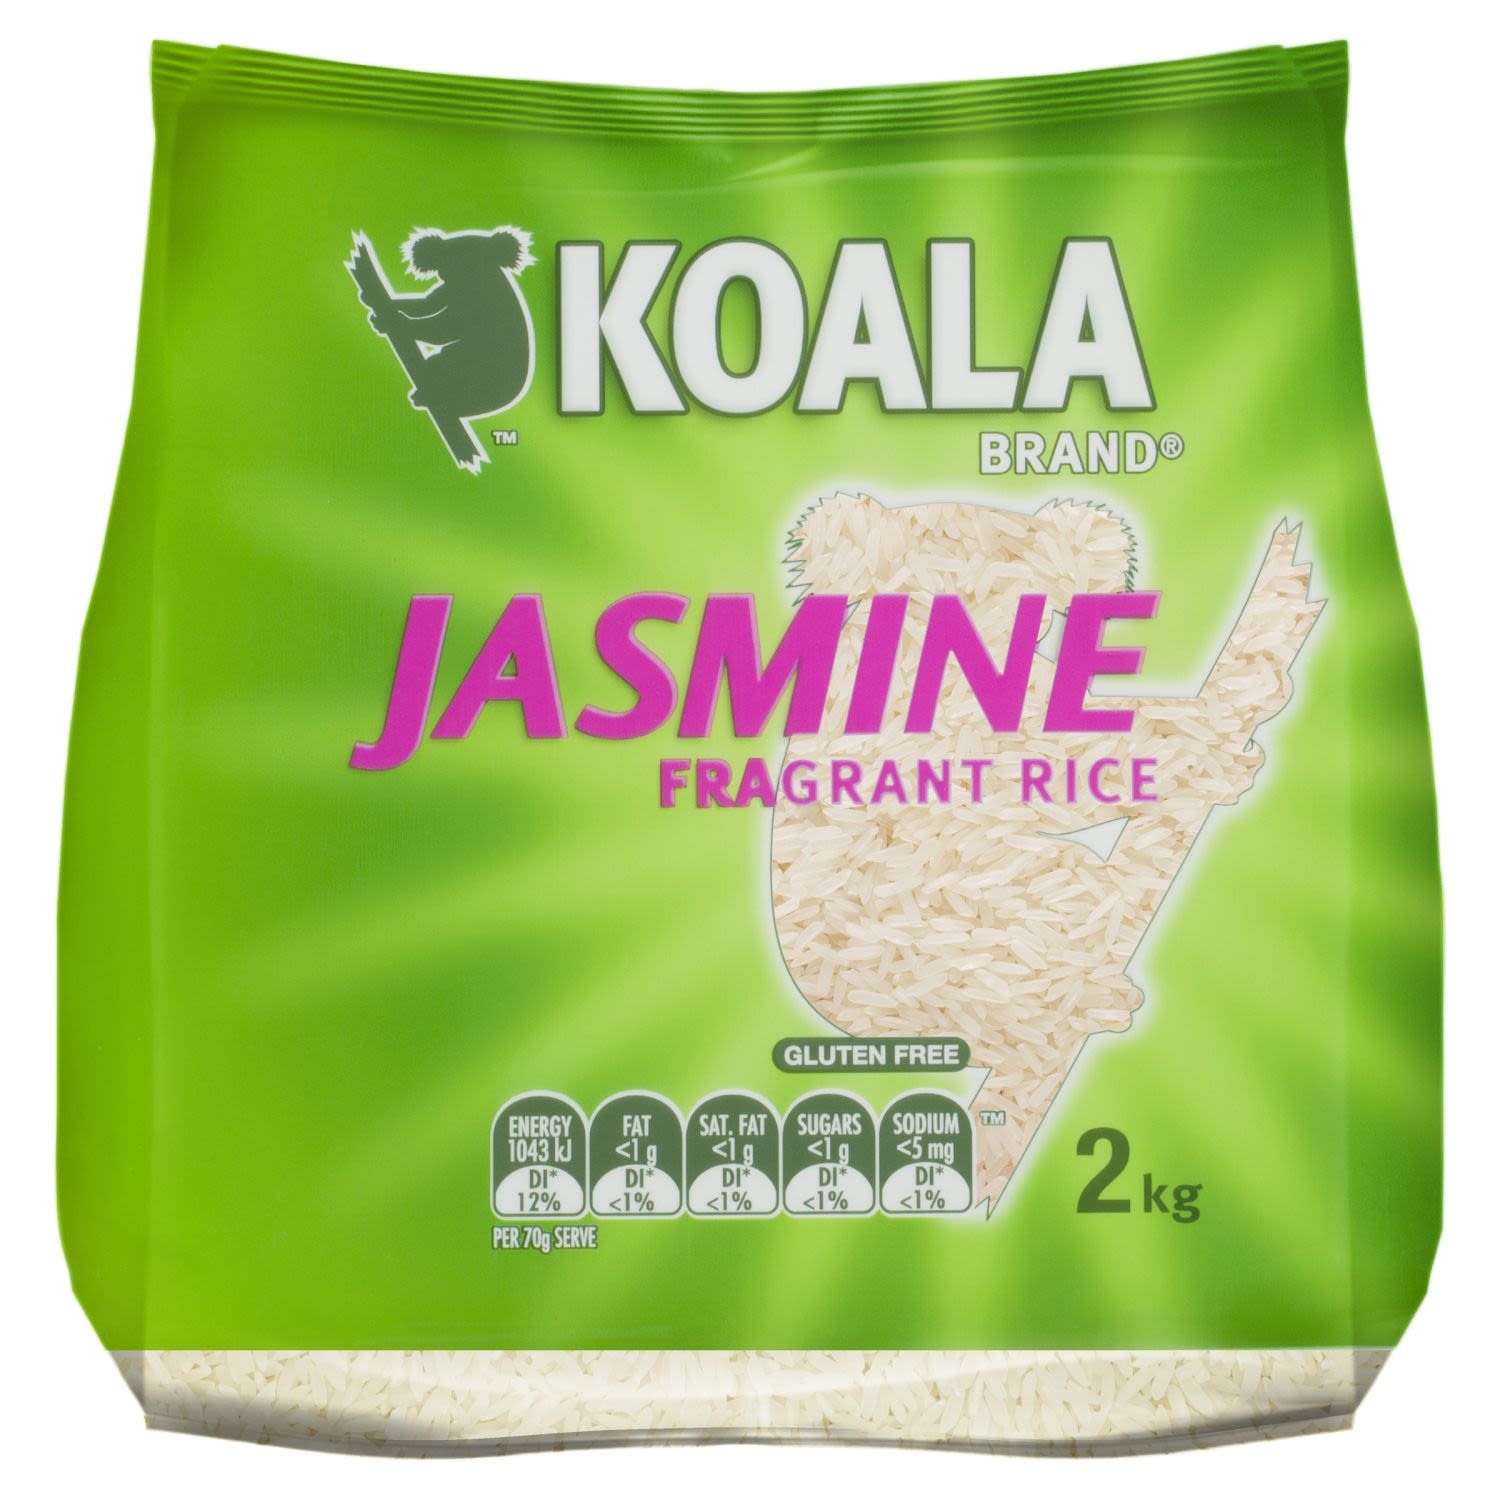 Koala Jasmine Fragrant Rice, 2 Kilogram